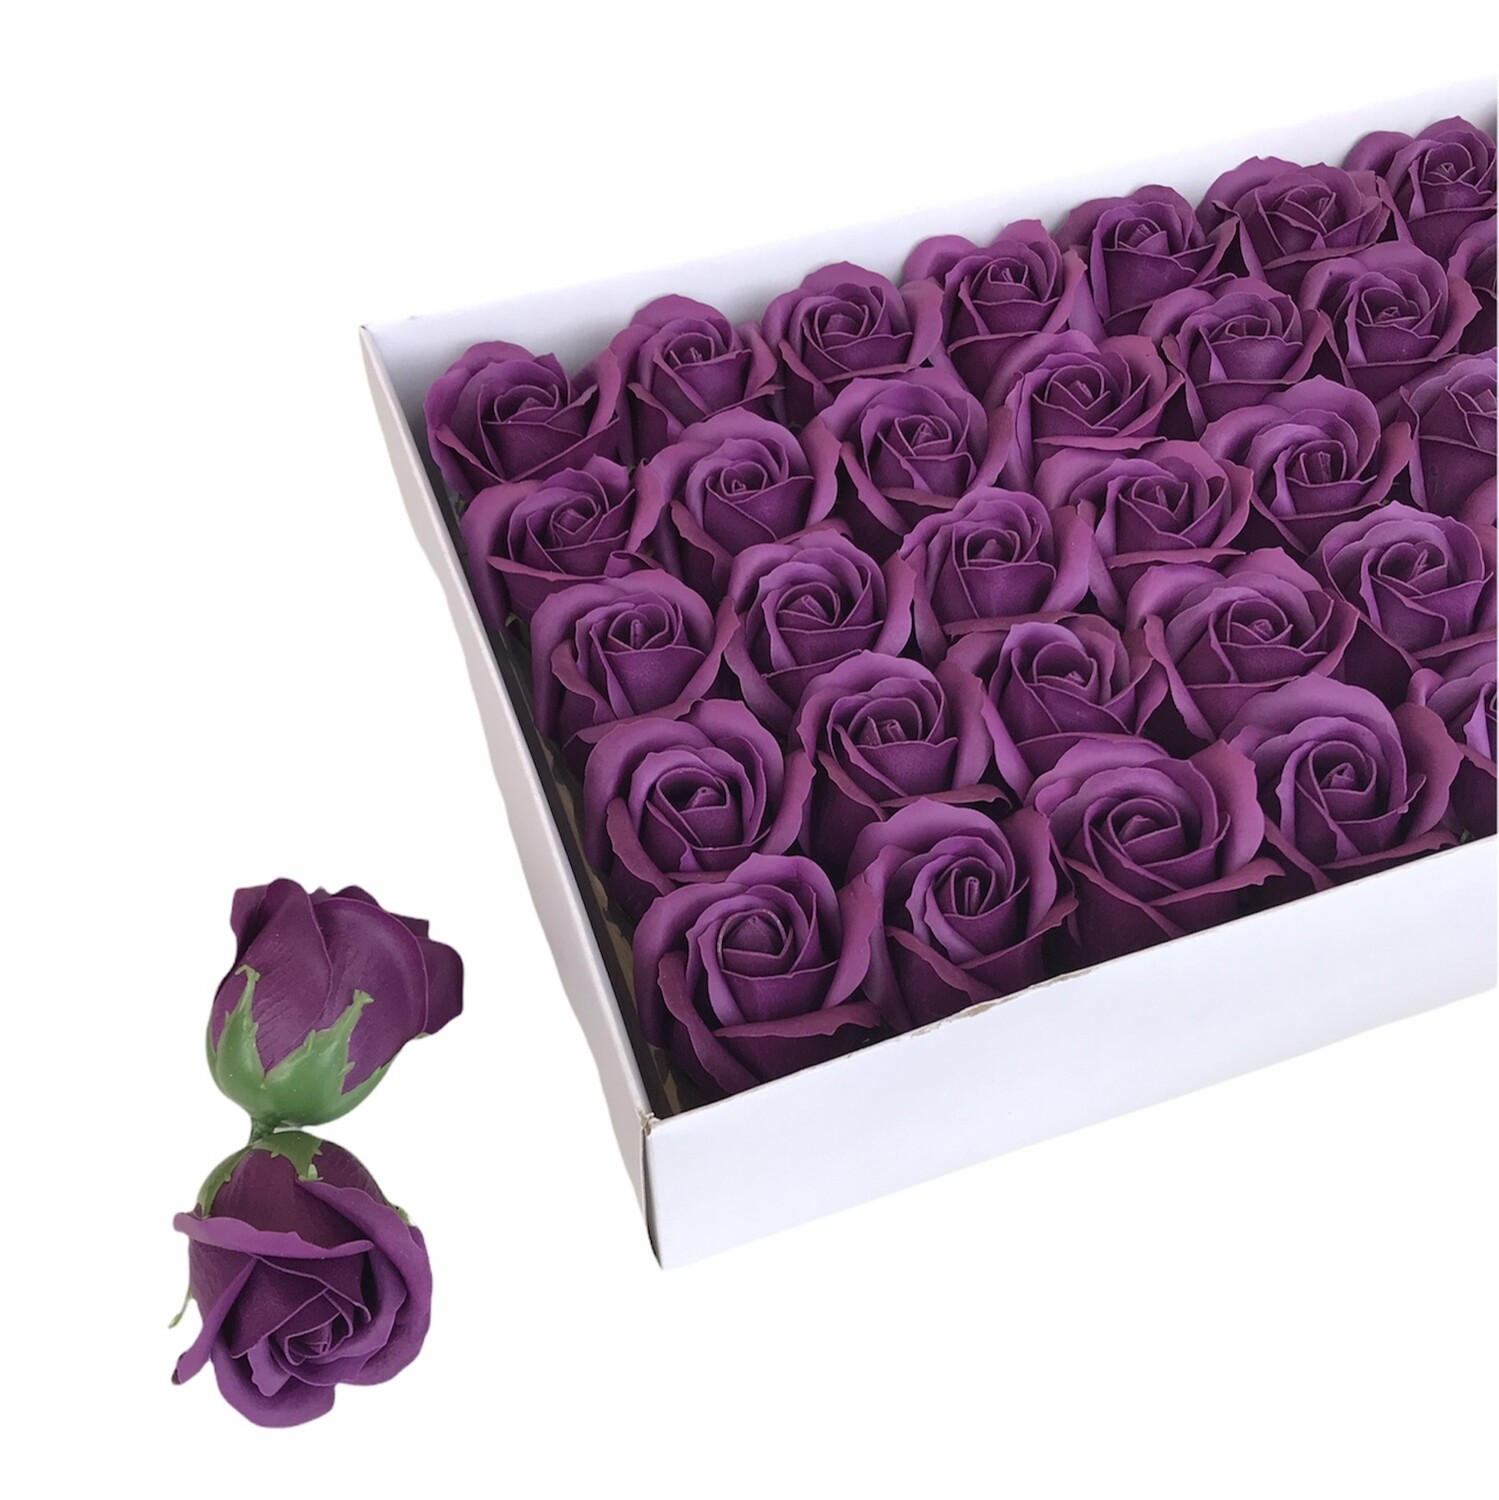 Мыльные розы, цвет - ВИННЫЙ, размер 5х5 см, в упаковке 50 шт